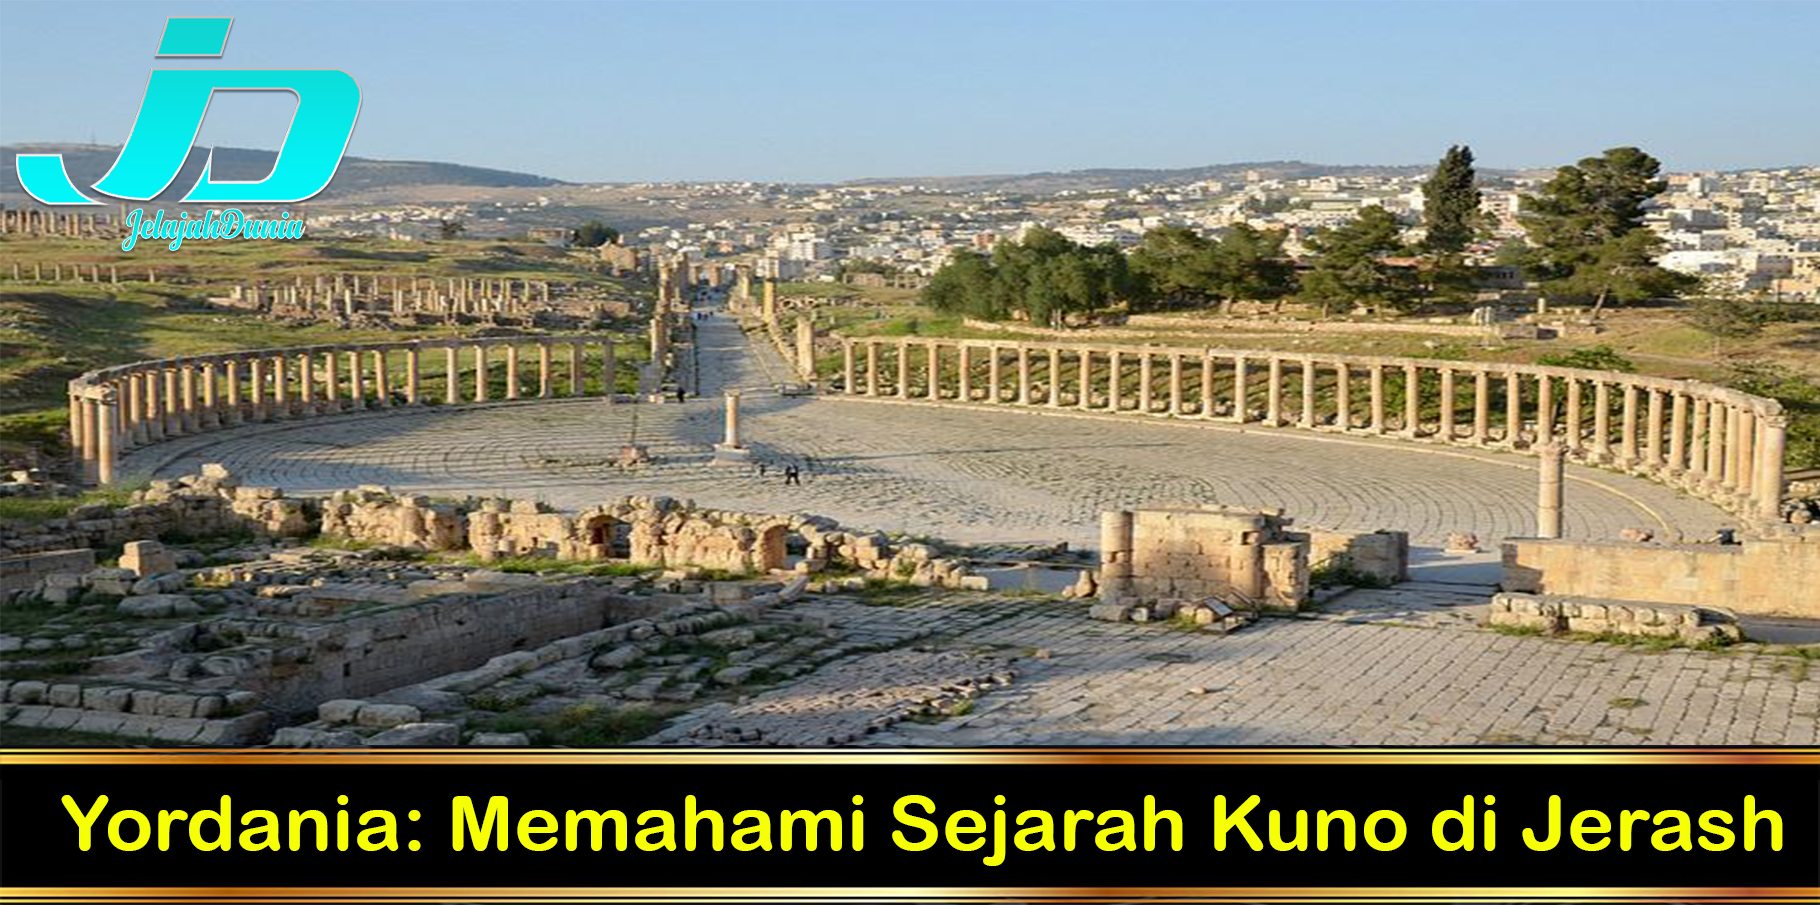 Yordania: Memahami Sejarah Kuno di Jerash